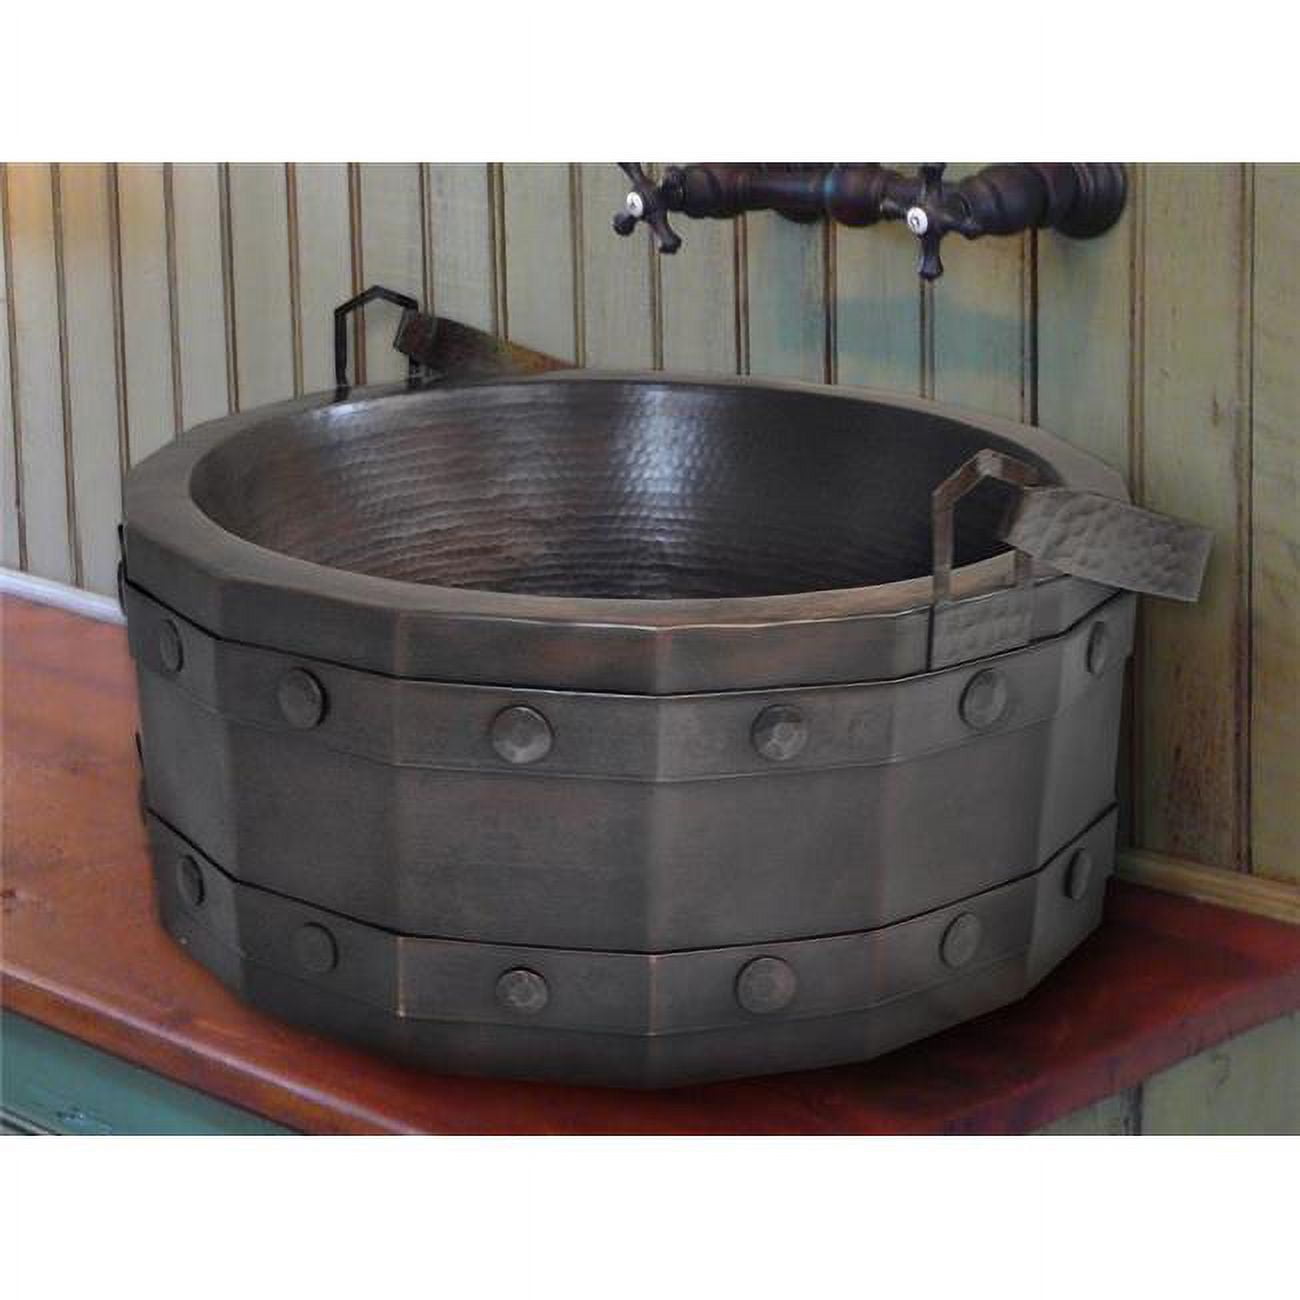 Crvs-bk-17-br Copper Round Vessel Sink, Bright - Bucket Design - 7 X 17 X 17 In.